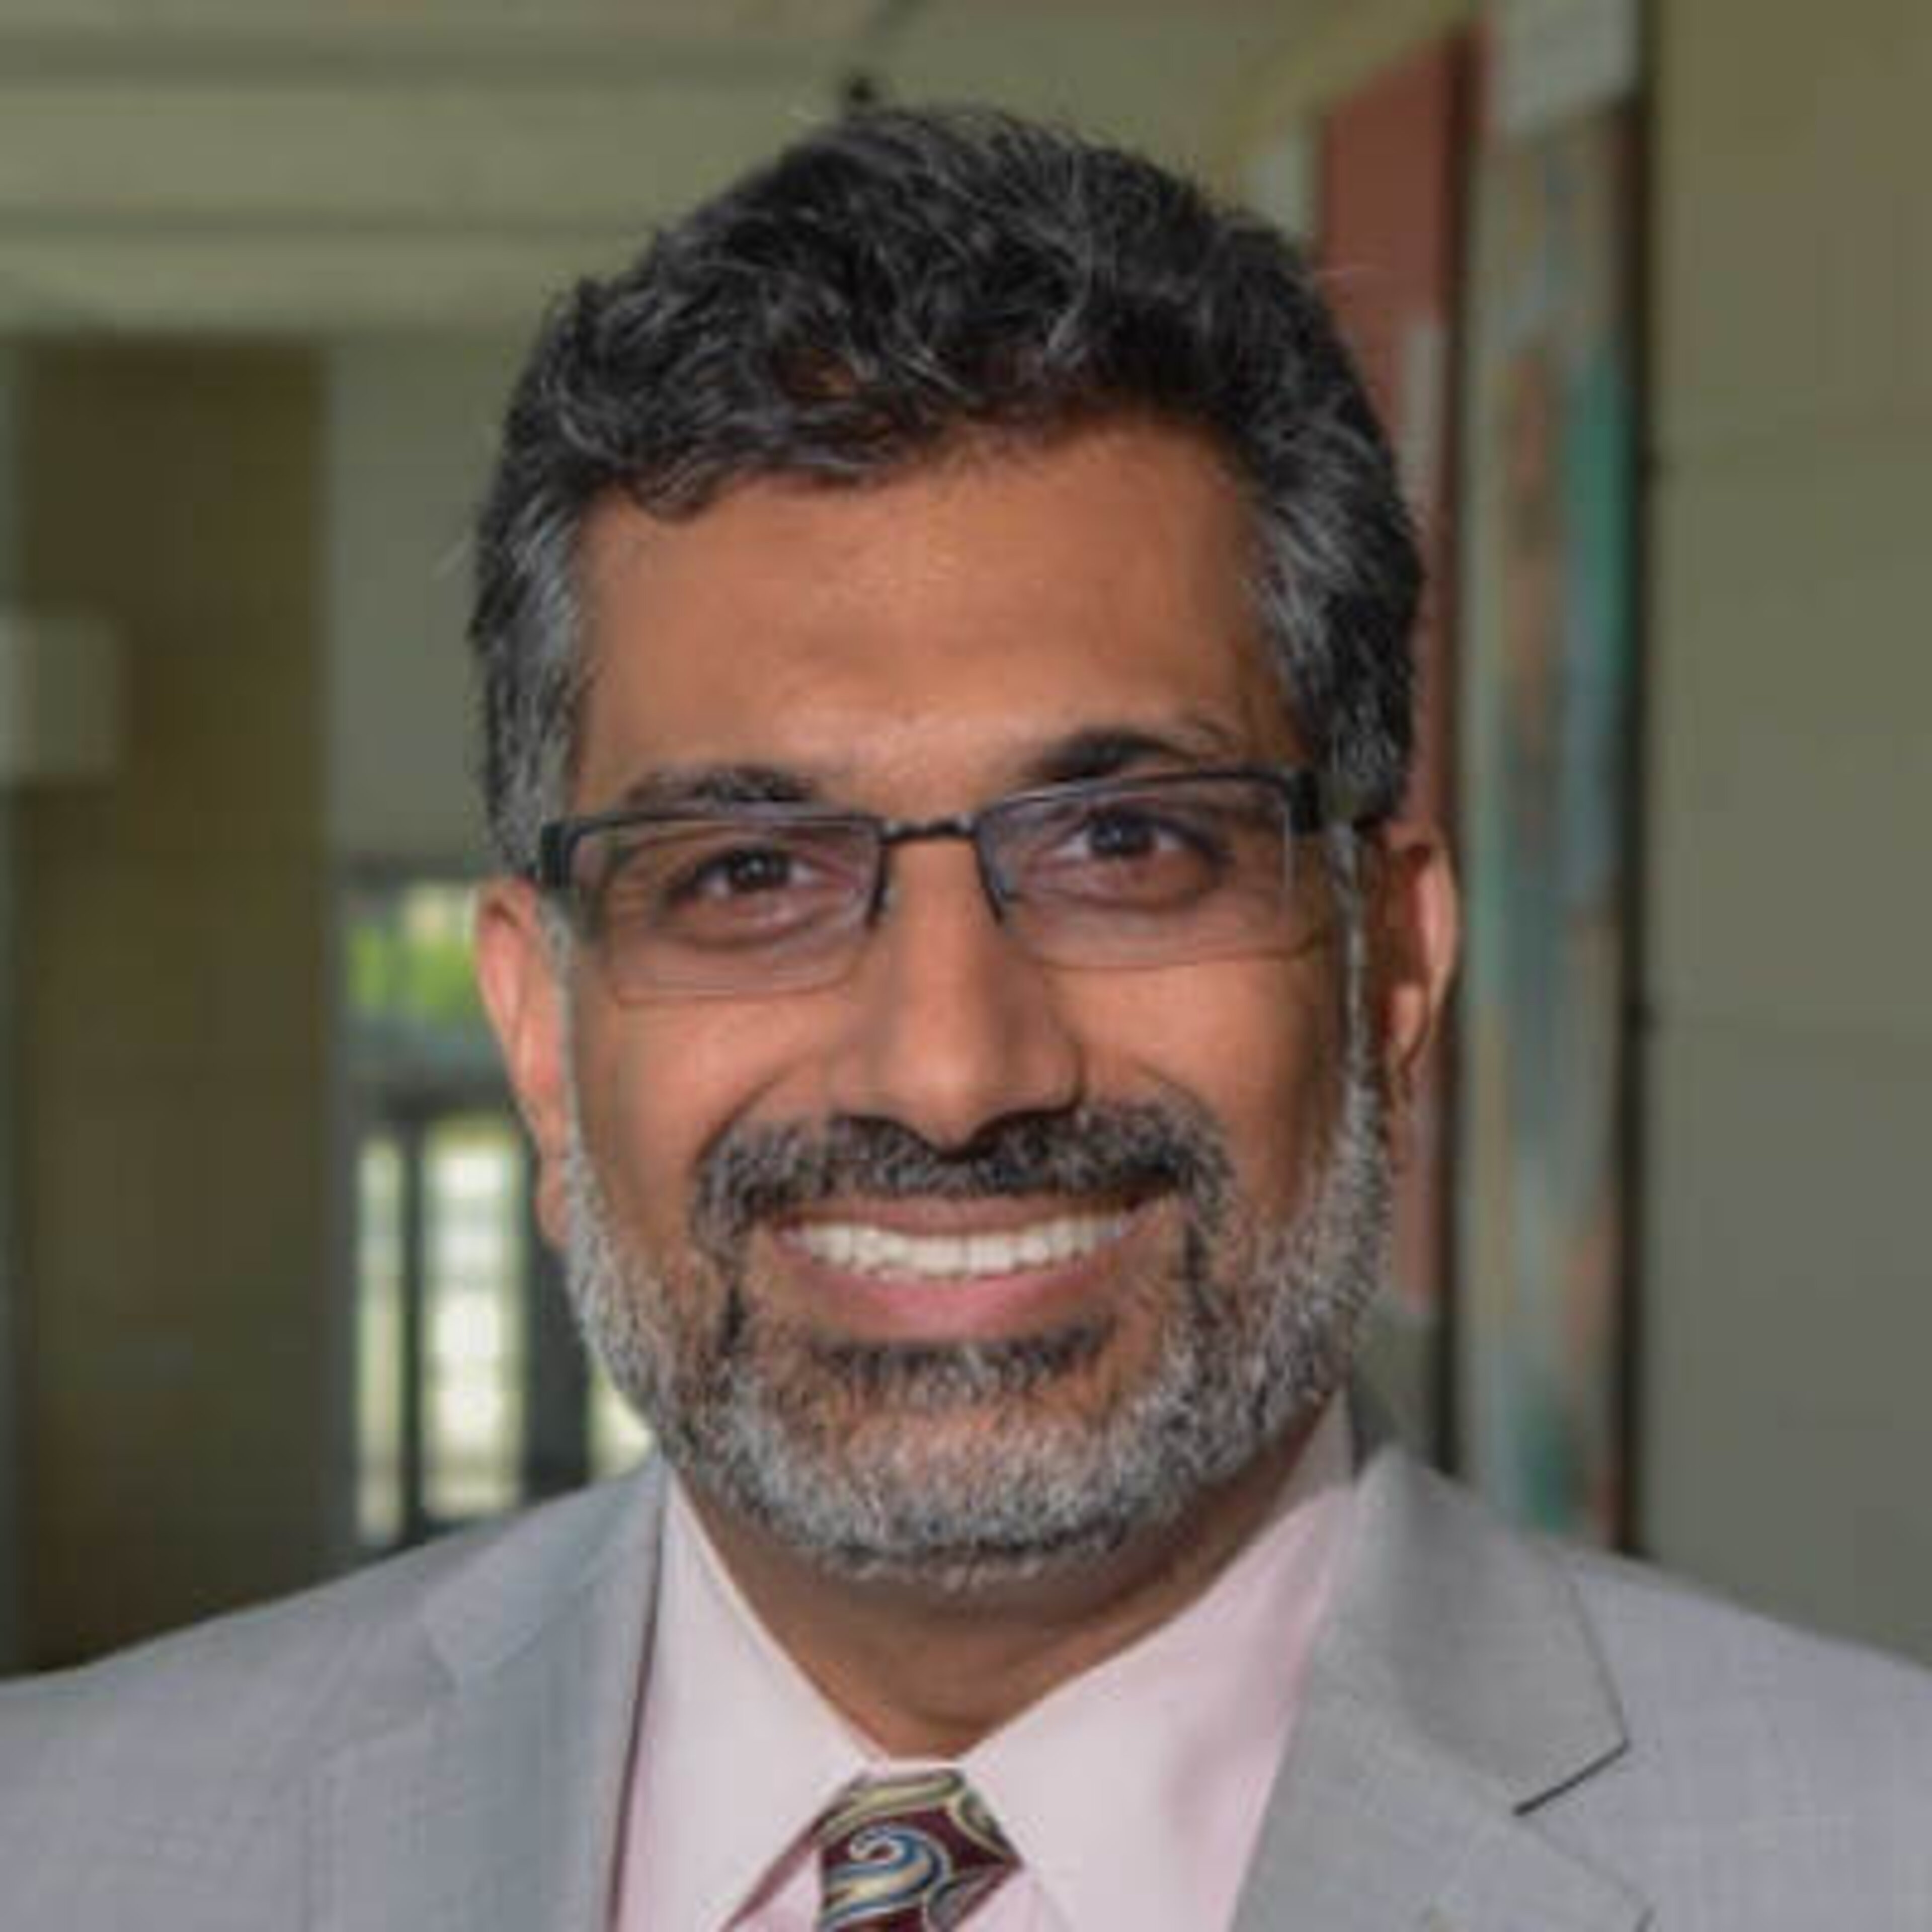 Portrait of Dr Khan